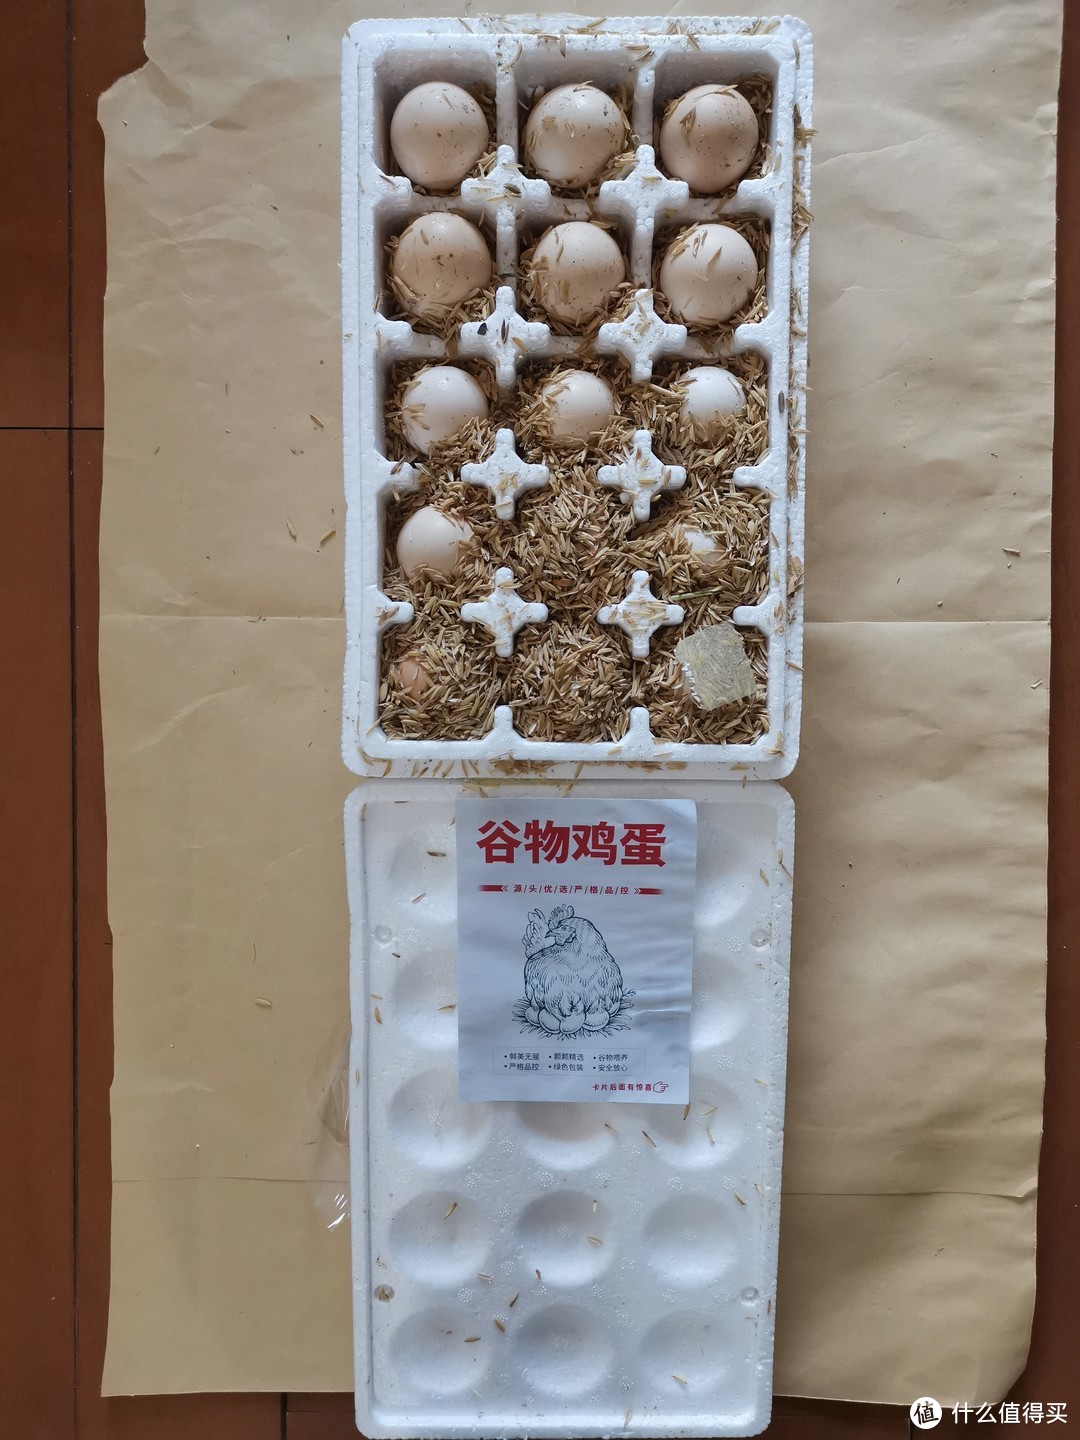 浅说京东的东东农场“免费水果”任务——顺便评论这家店铺的鸡蛋保管